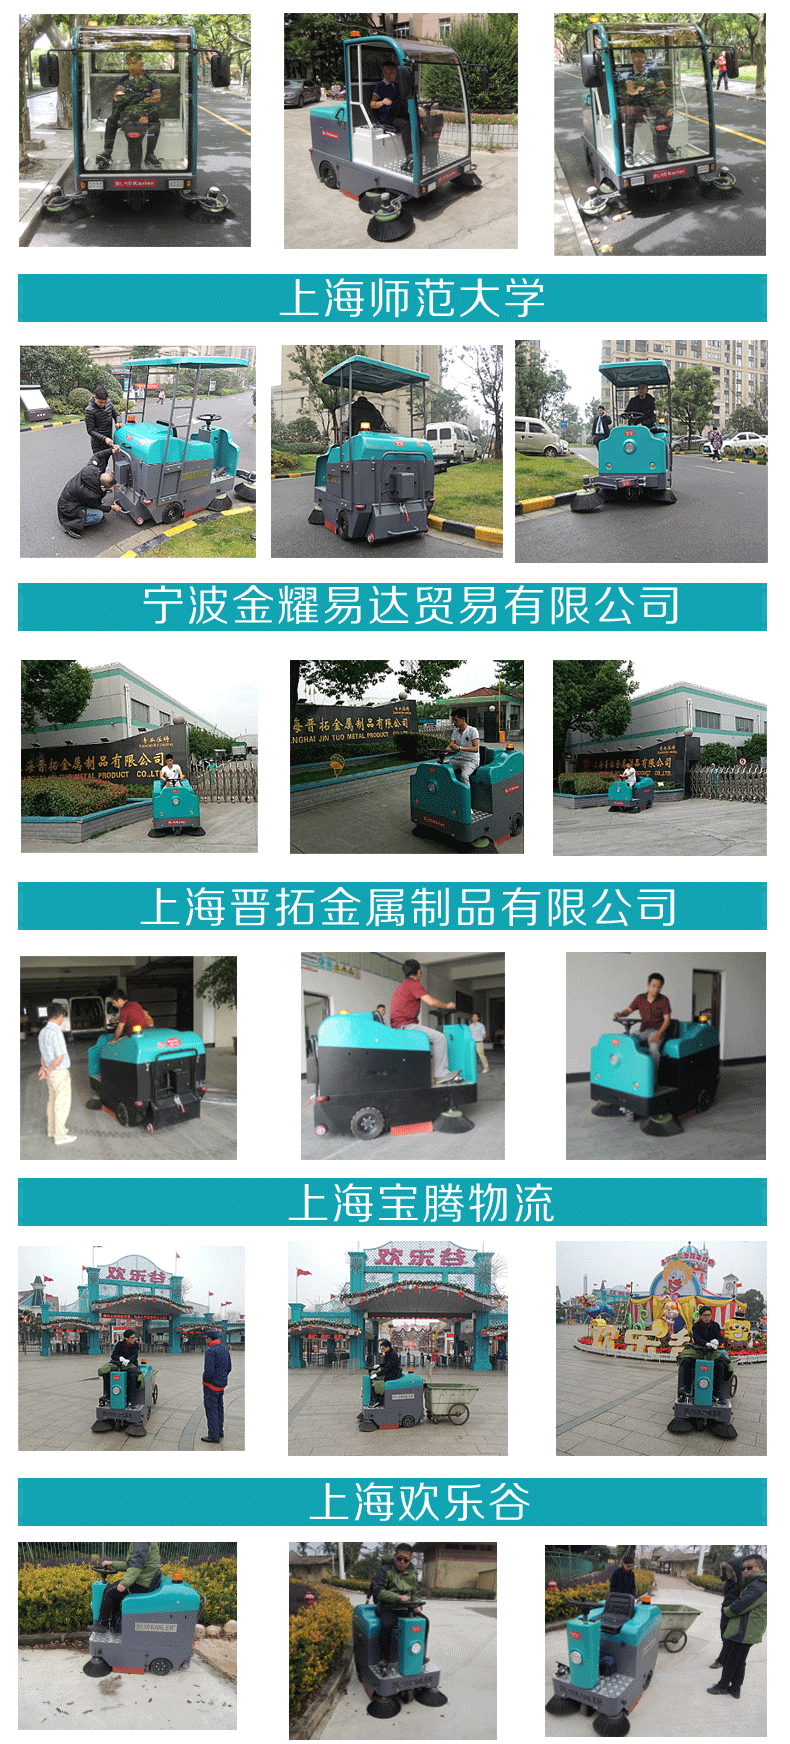 嘉兴汽车配件厂油污灰尘驾驶式洗地机HY70  清洗吸干拖地机供应商示例图12